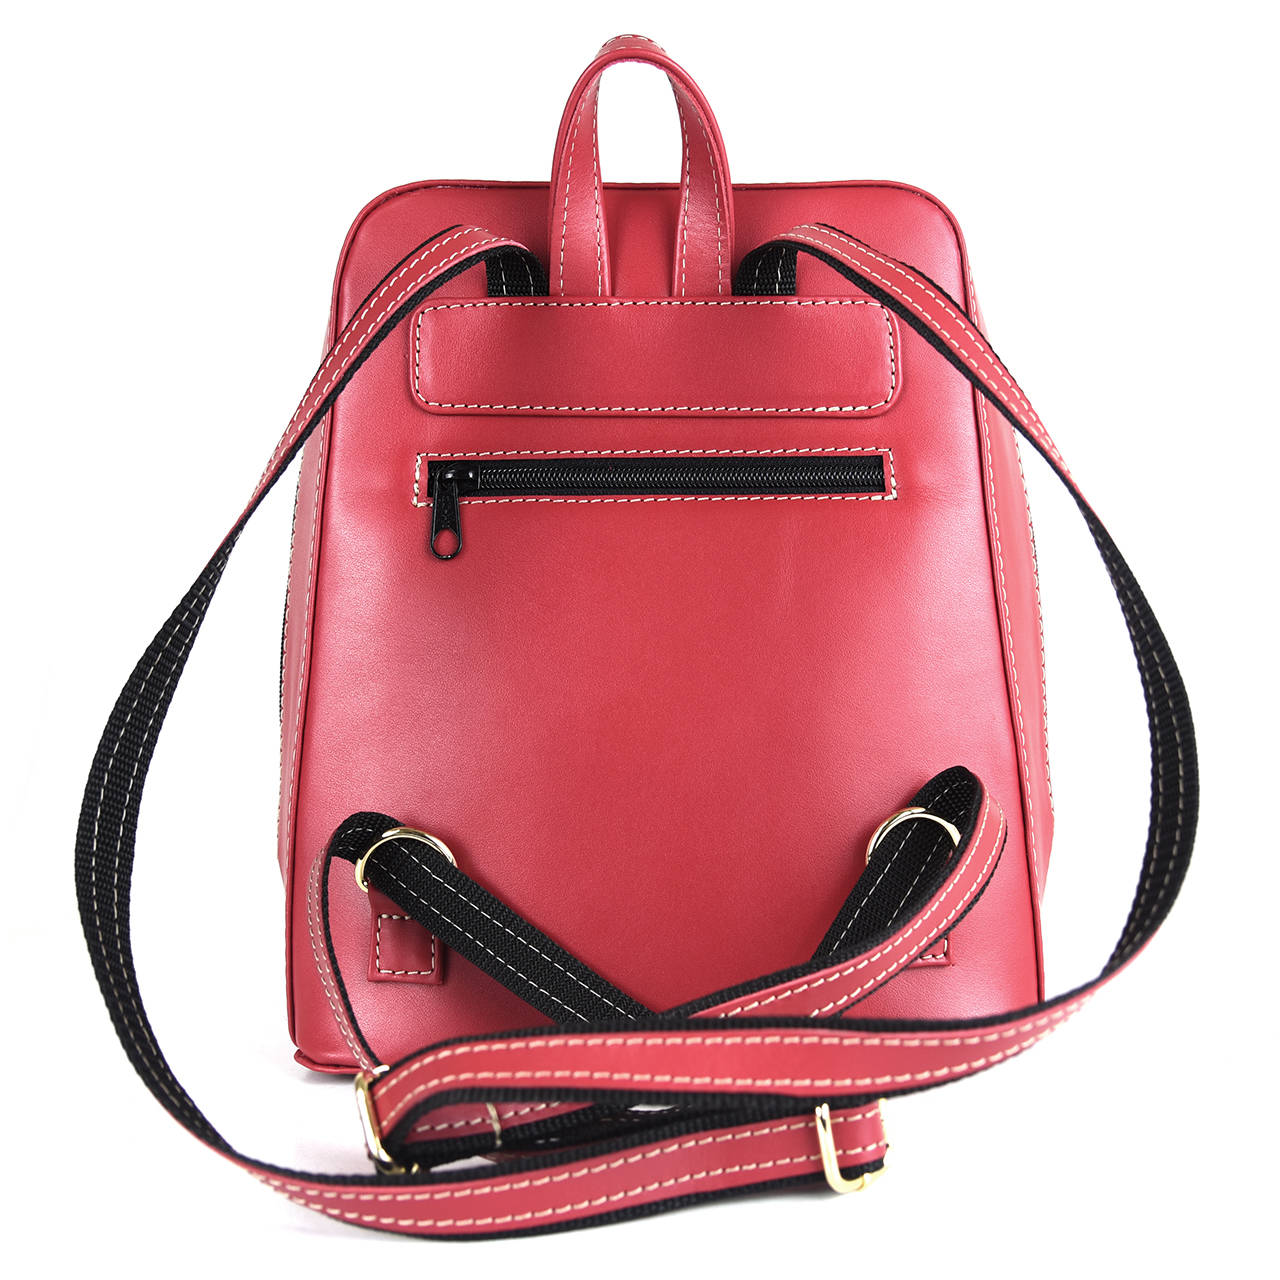 Štýlový dámsky kožený ruksak z prírodnej kože v červenej farbe